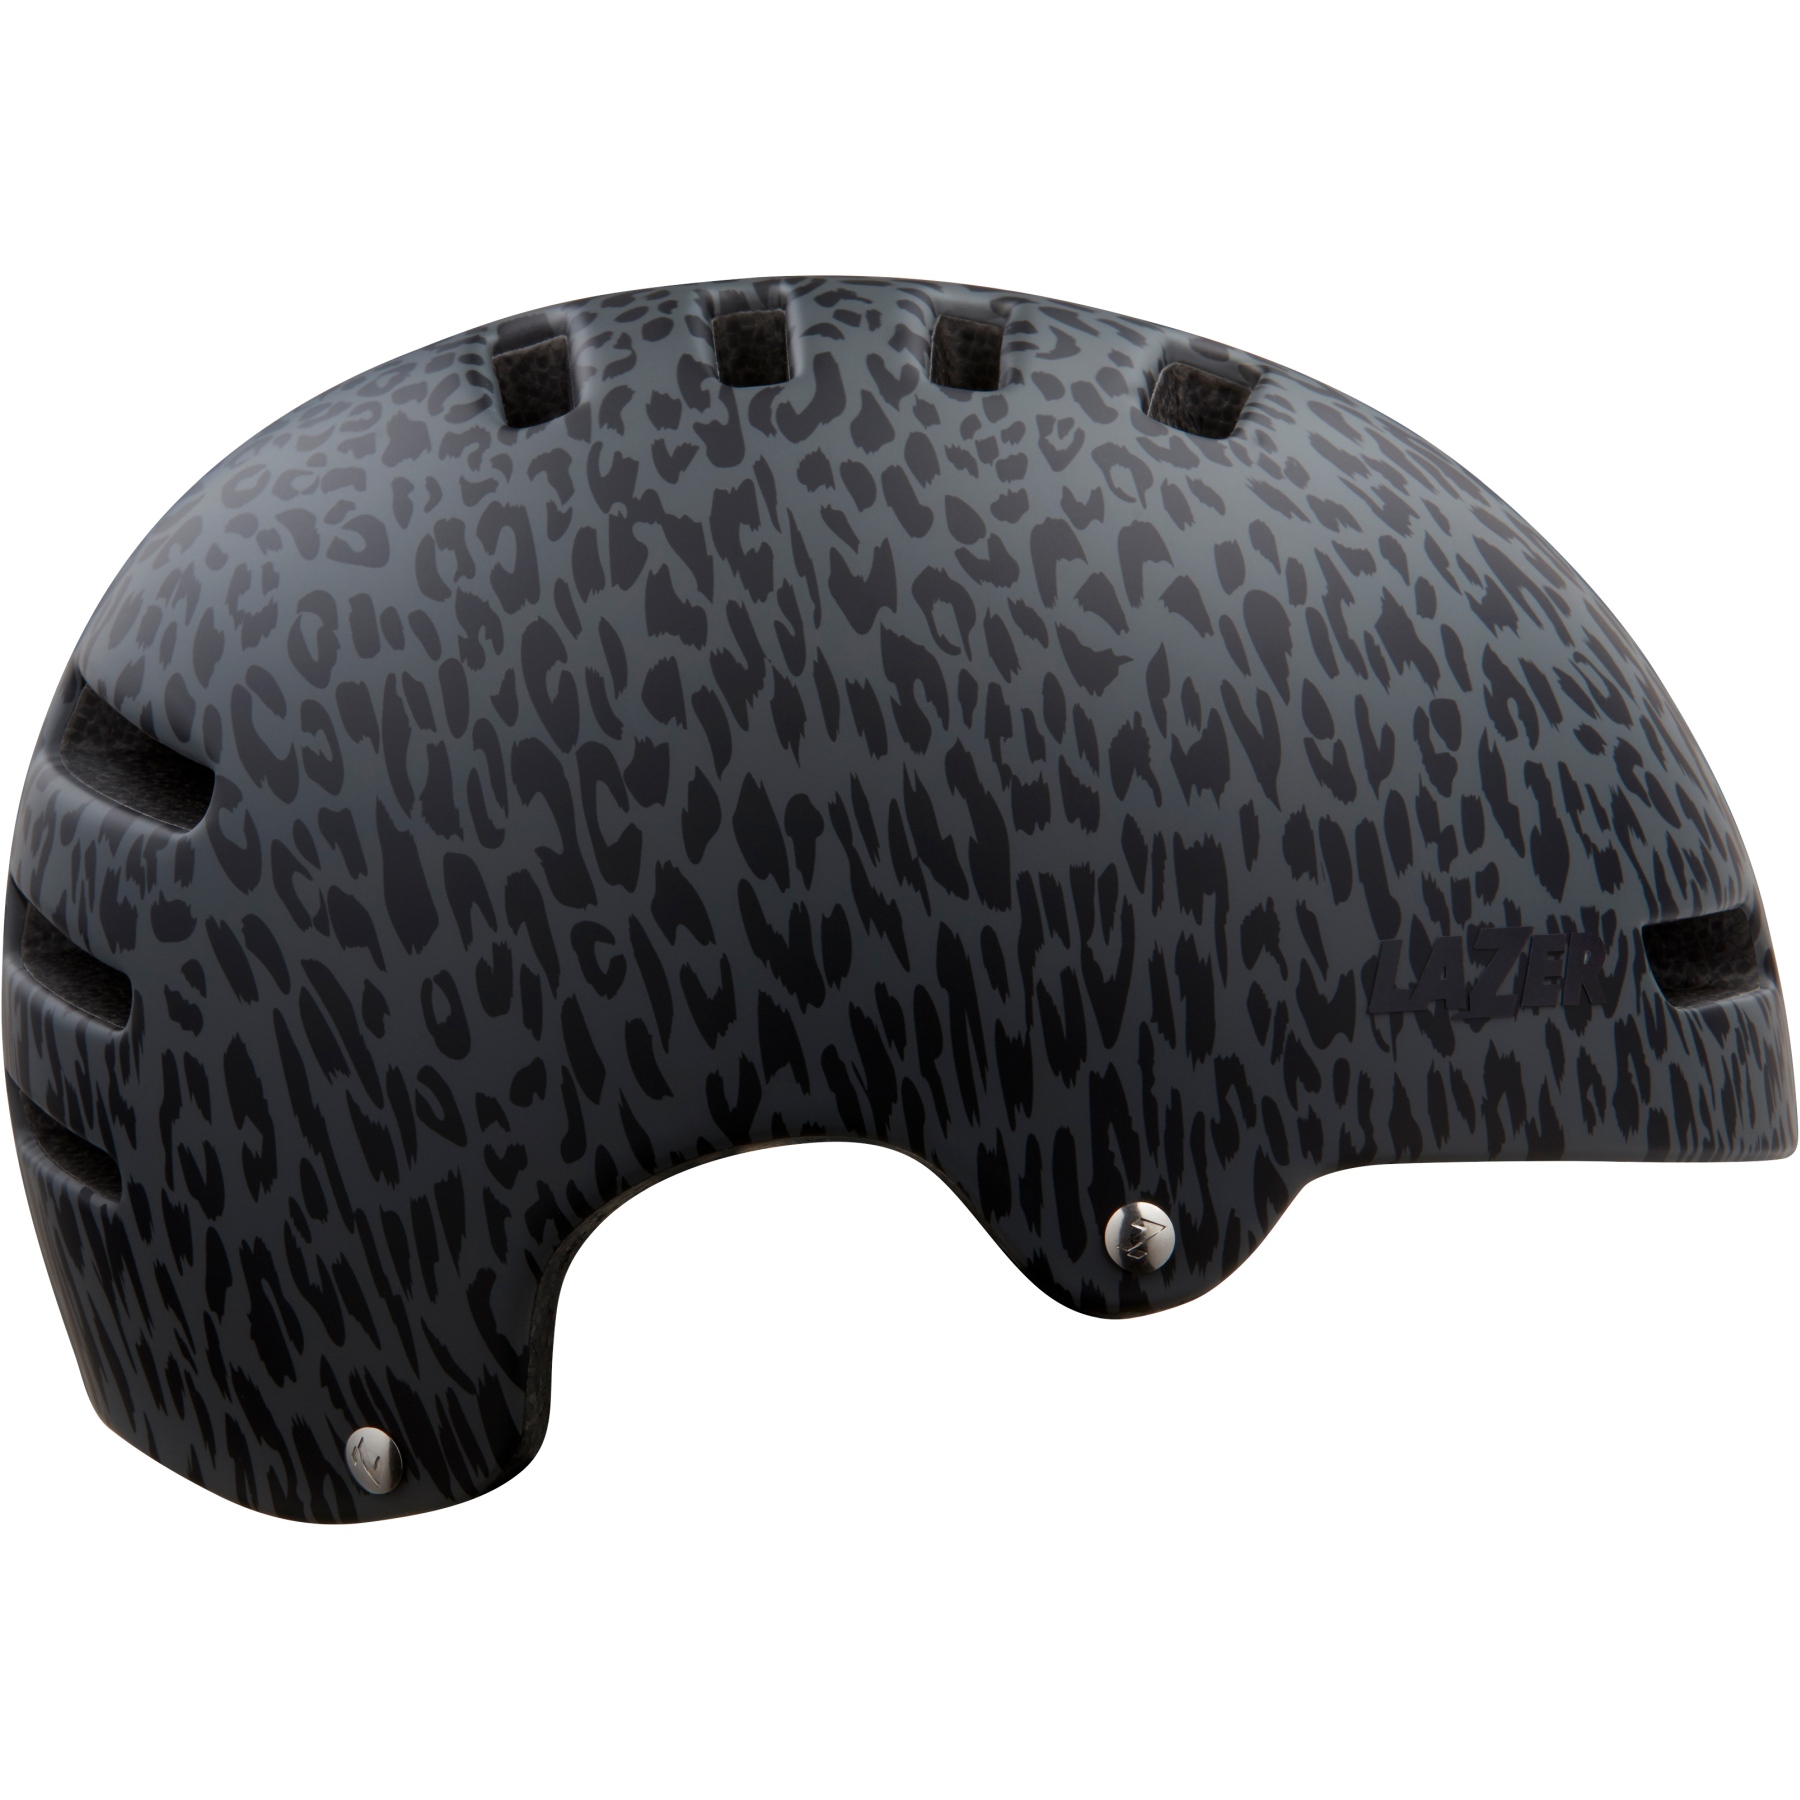 Productfoto van Lazer Armor 2.0 Helmet - matte leopard